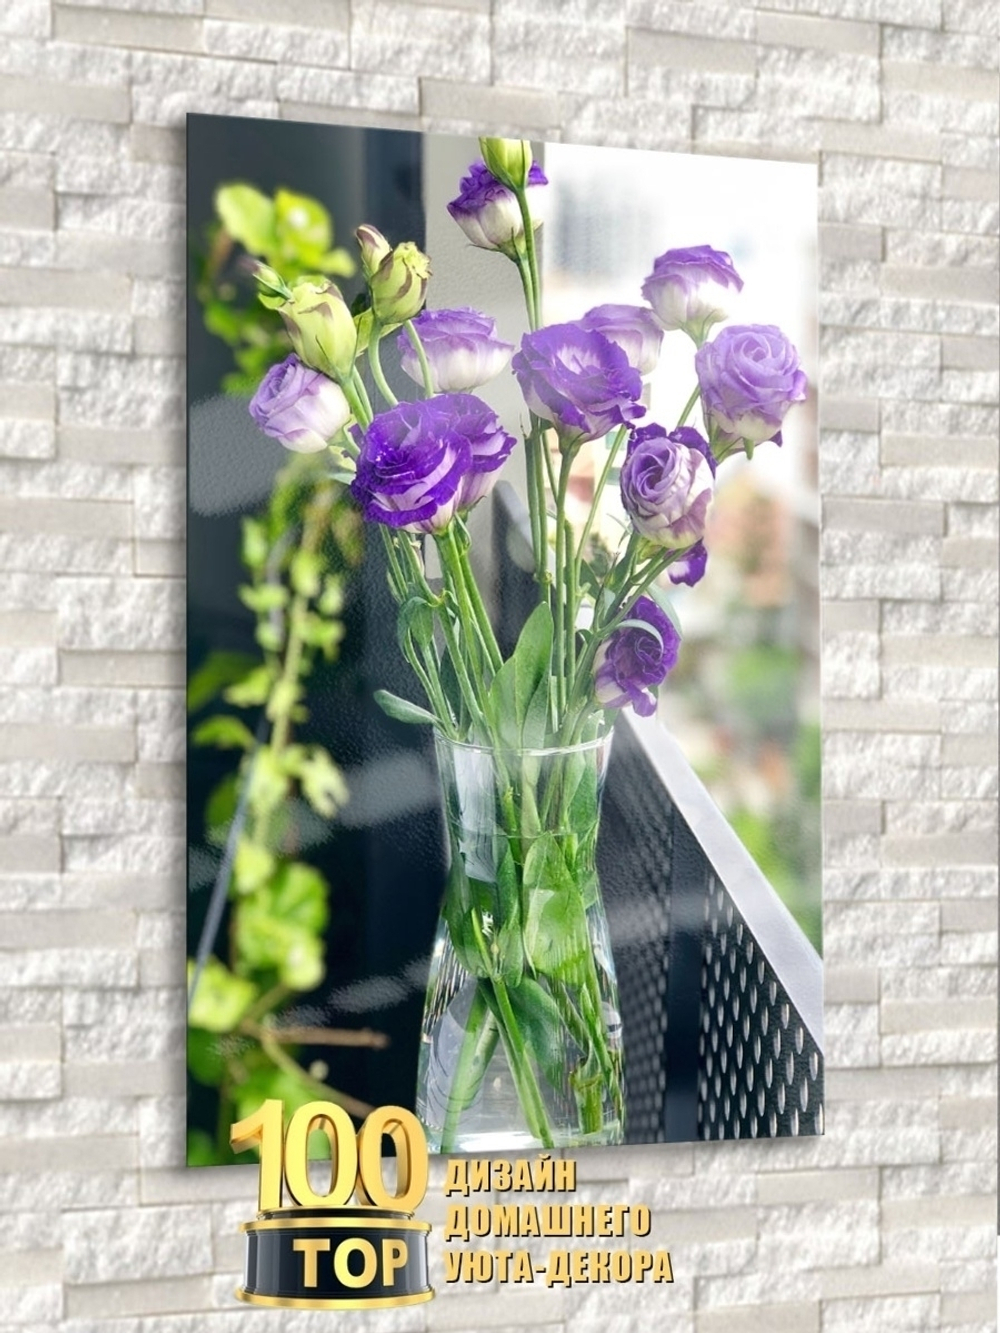 Модульная стеклянная интерьерная картина /Фотокартина на стекле /Фиолетовый букет, 28x40 см. Декор для дома, подарок